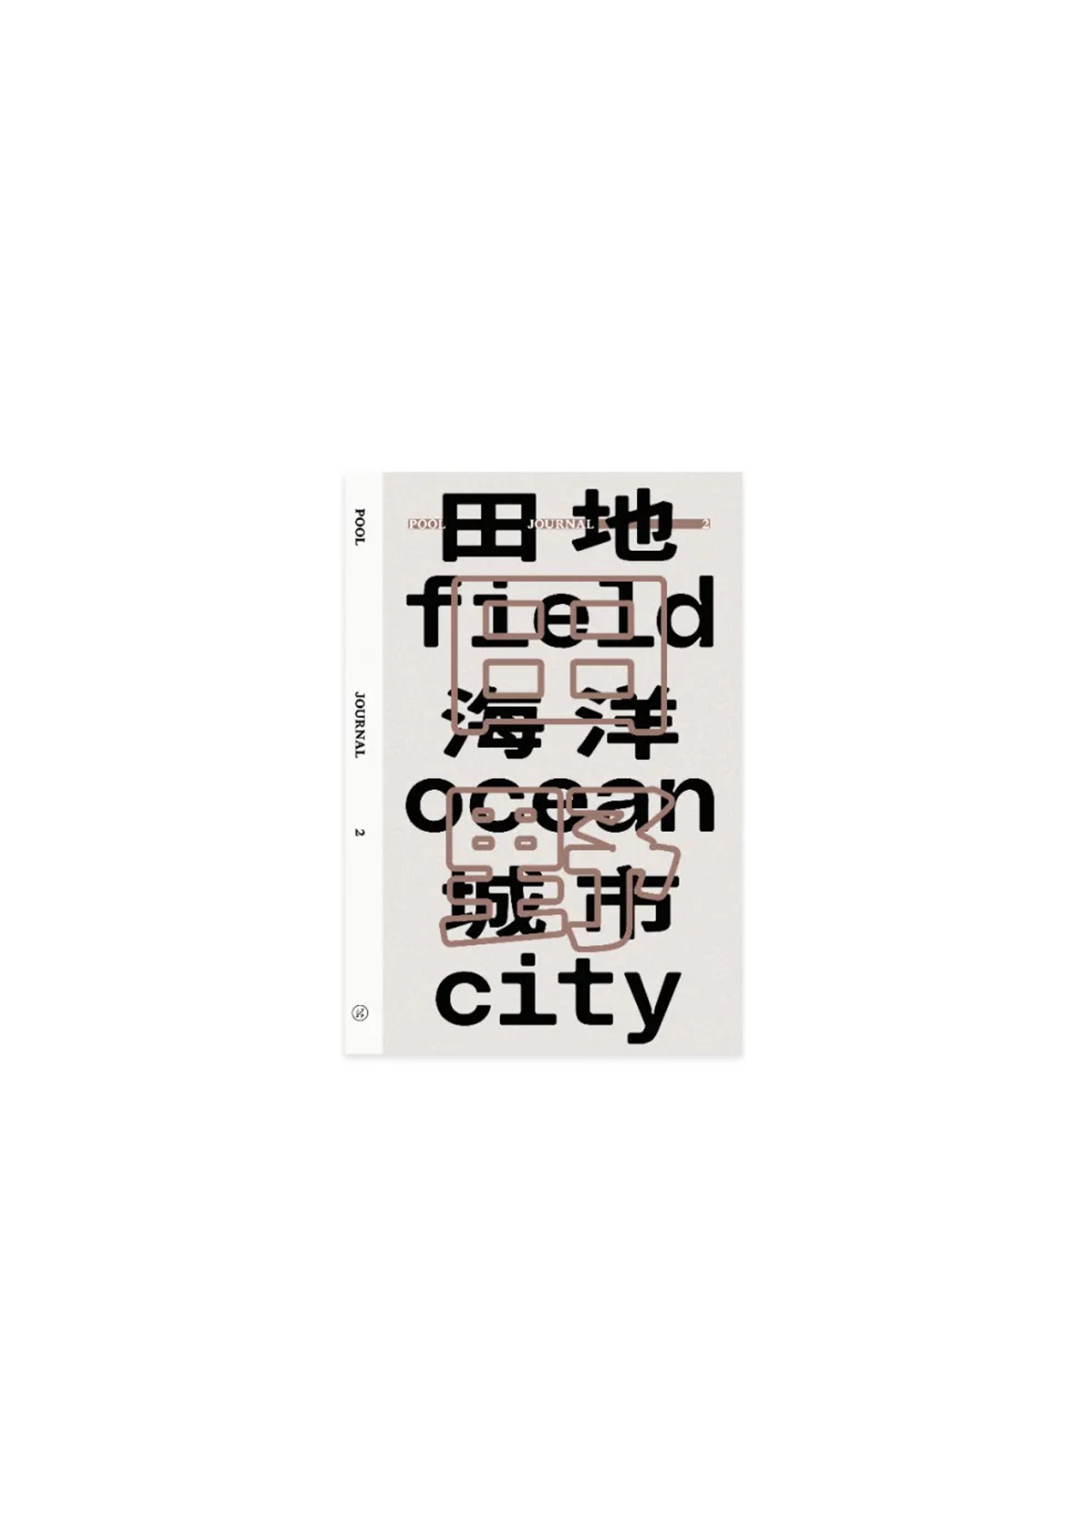 PooL Journal 2: Field, Ocean, City